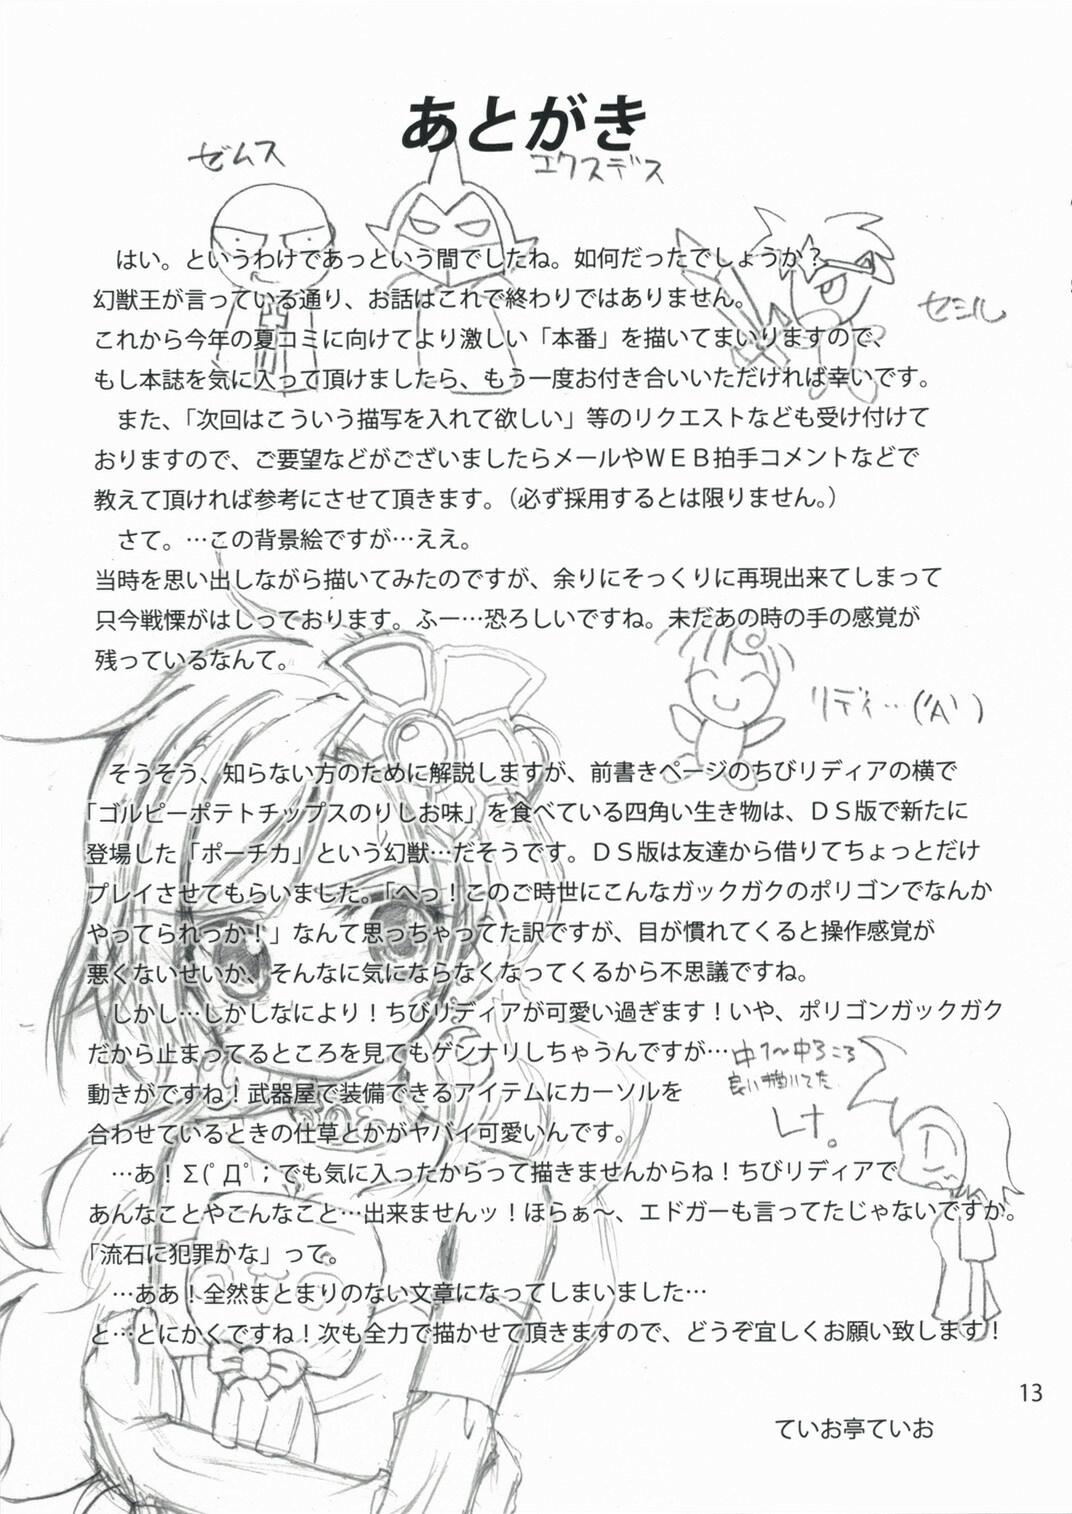 (SC40) [Teio Tei (Teio Tei Teio)] Shokushu x Rydia 2008 Otameshiban - Tentacle x Rydia 2008 Pilot Style (Final Fantasy IV) [English] page 13 full